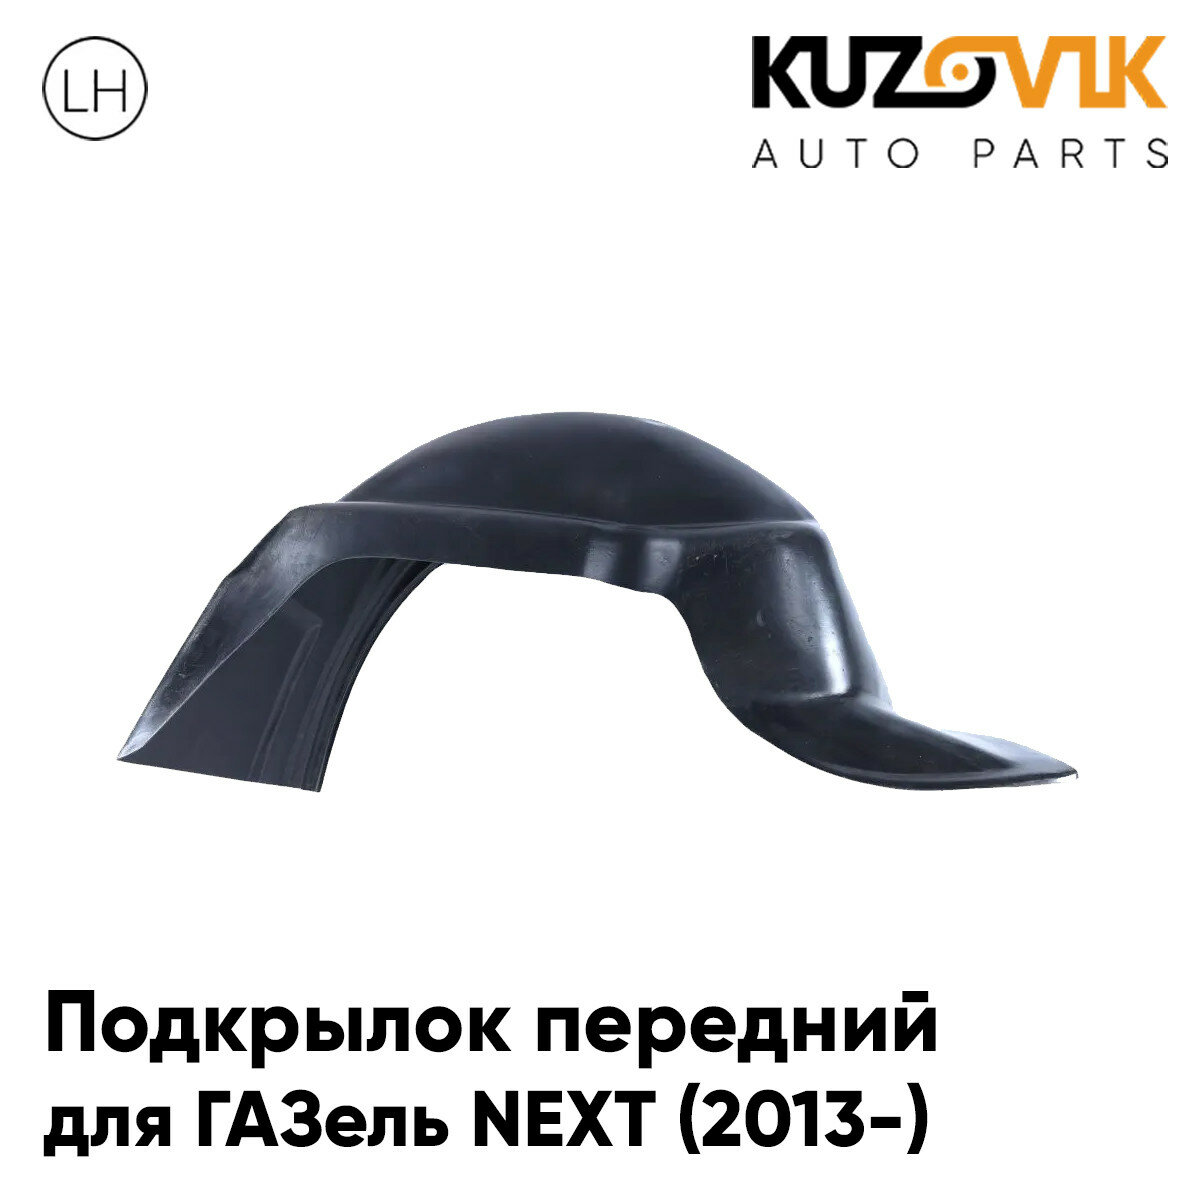 Подкрылок передний для ГАЗель NEXT (2013-) левый